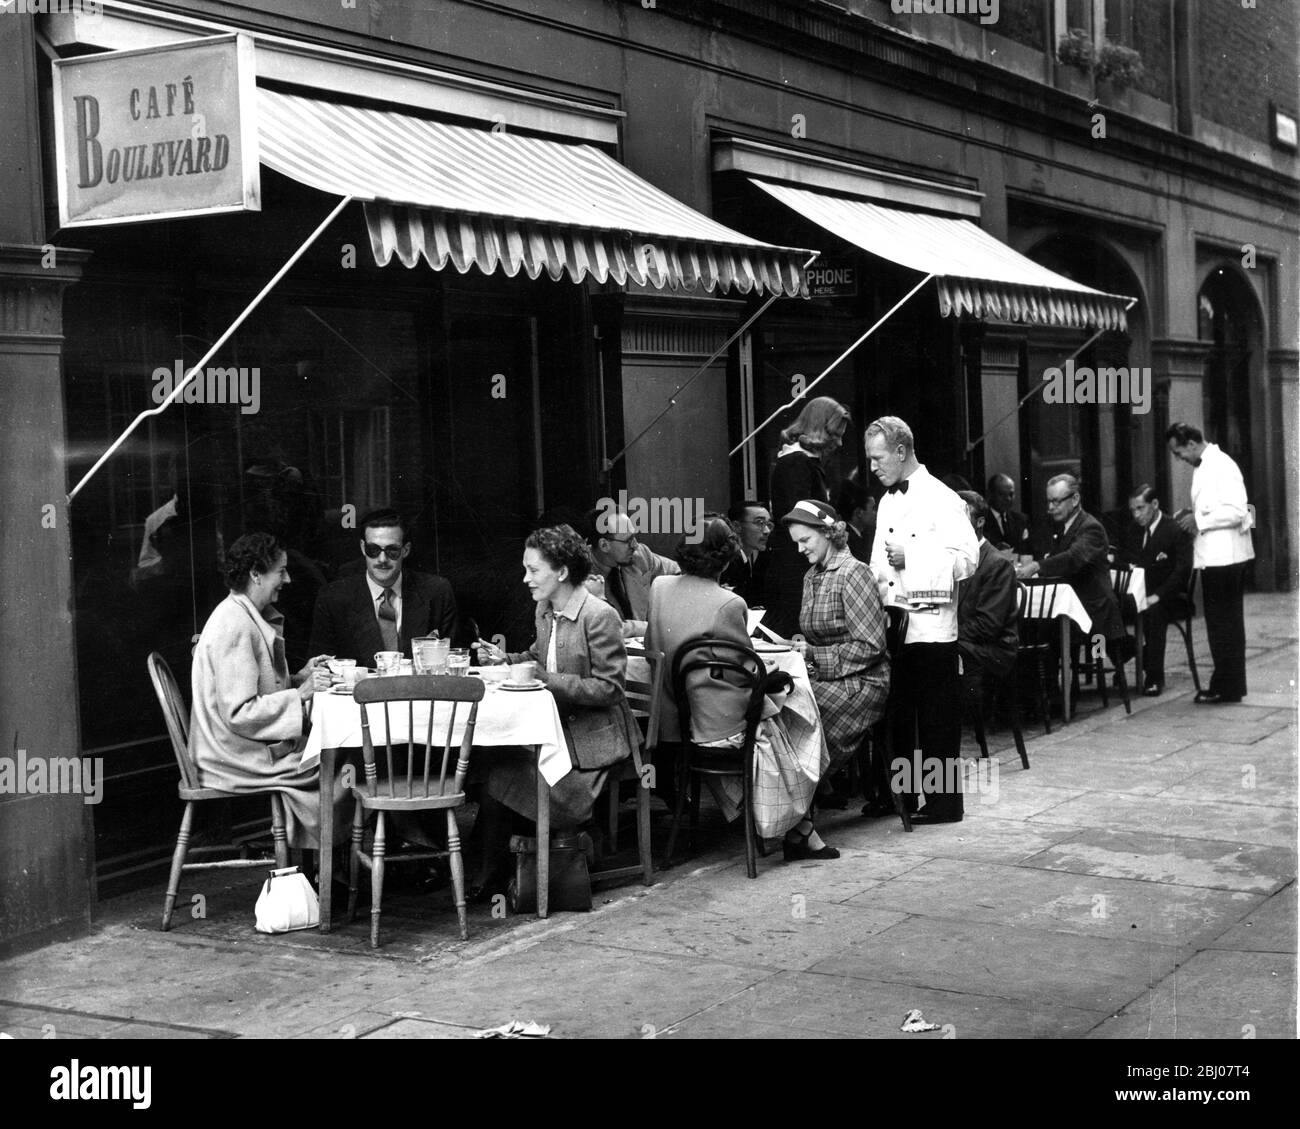 La scena insolita fuori dal Cafe Boulevard in Shepherd's Place, Mayfair, nei pressi di Upper Brook Street, Londra, mostra un tocco di vita continentale con i clienti fuori sul marciapiede che vengono seguiti con servizio cameriere. - 15 agosto 1951 Foto Stock